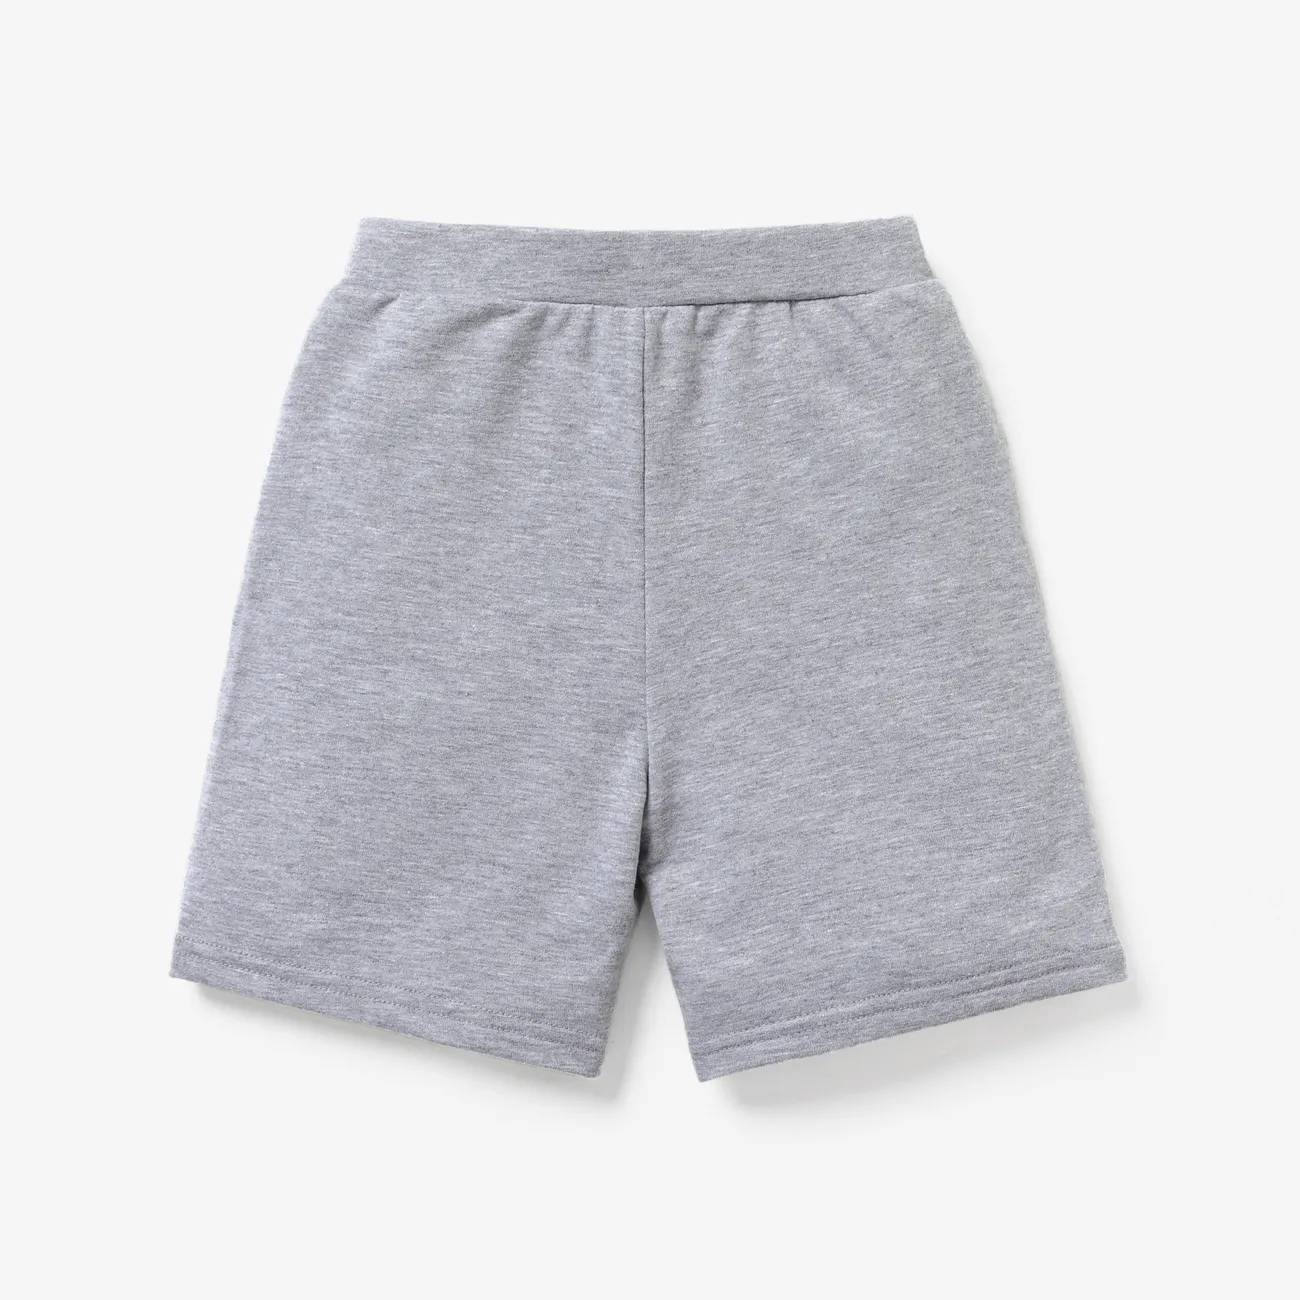 Elastische Shorts mit Brief-/Tarndruck für Kleinkinder/Kinderjungen grau gesprenkelt big image 1